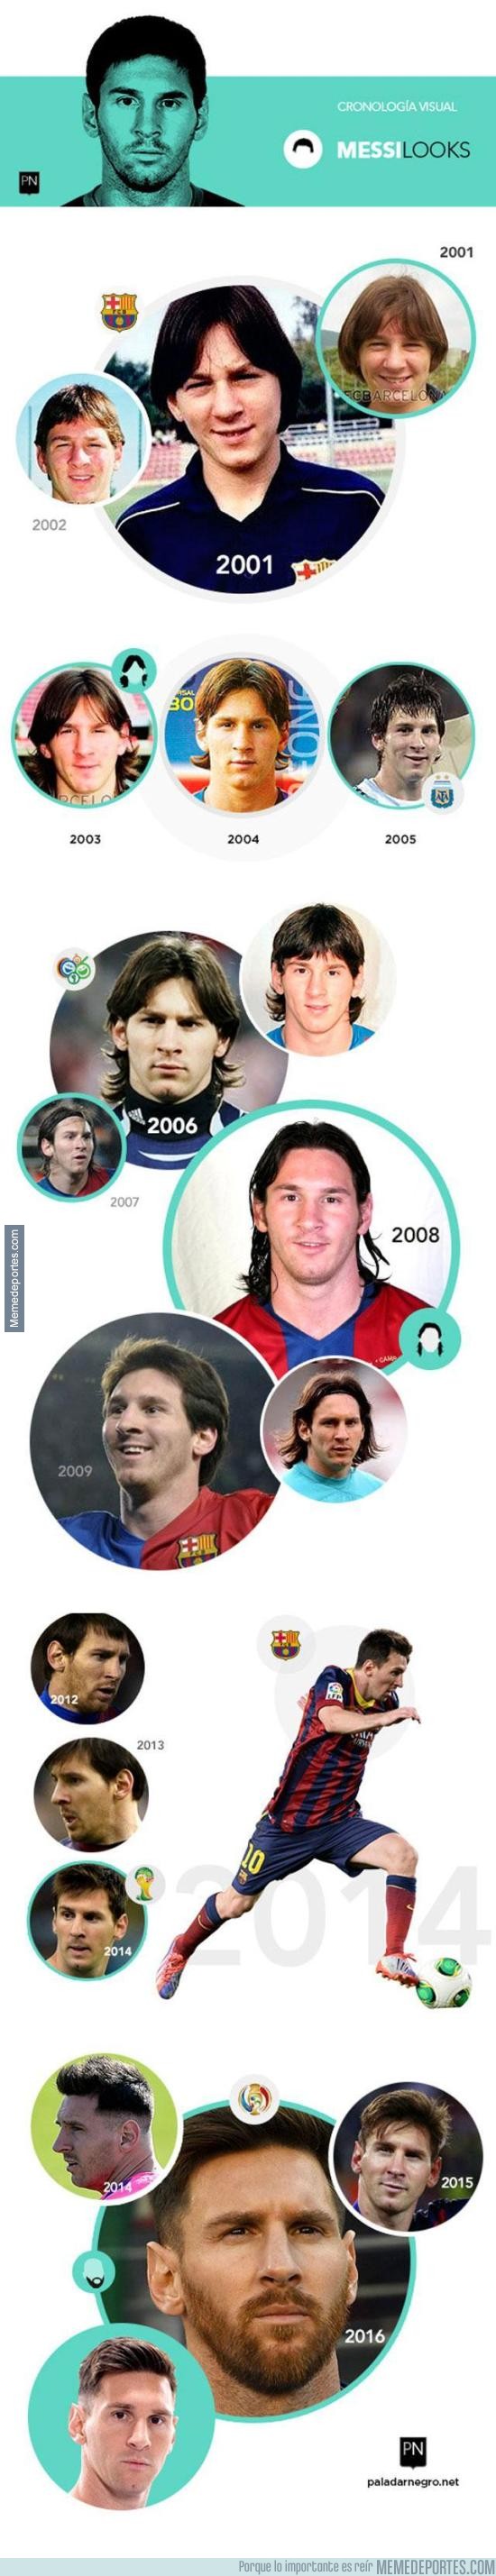 878206 - La cronología del look de Messi tras superar el récord de máximo goleador argentino